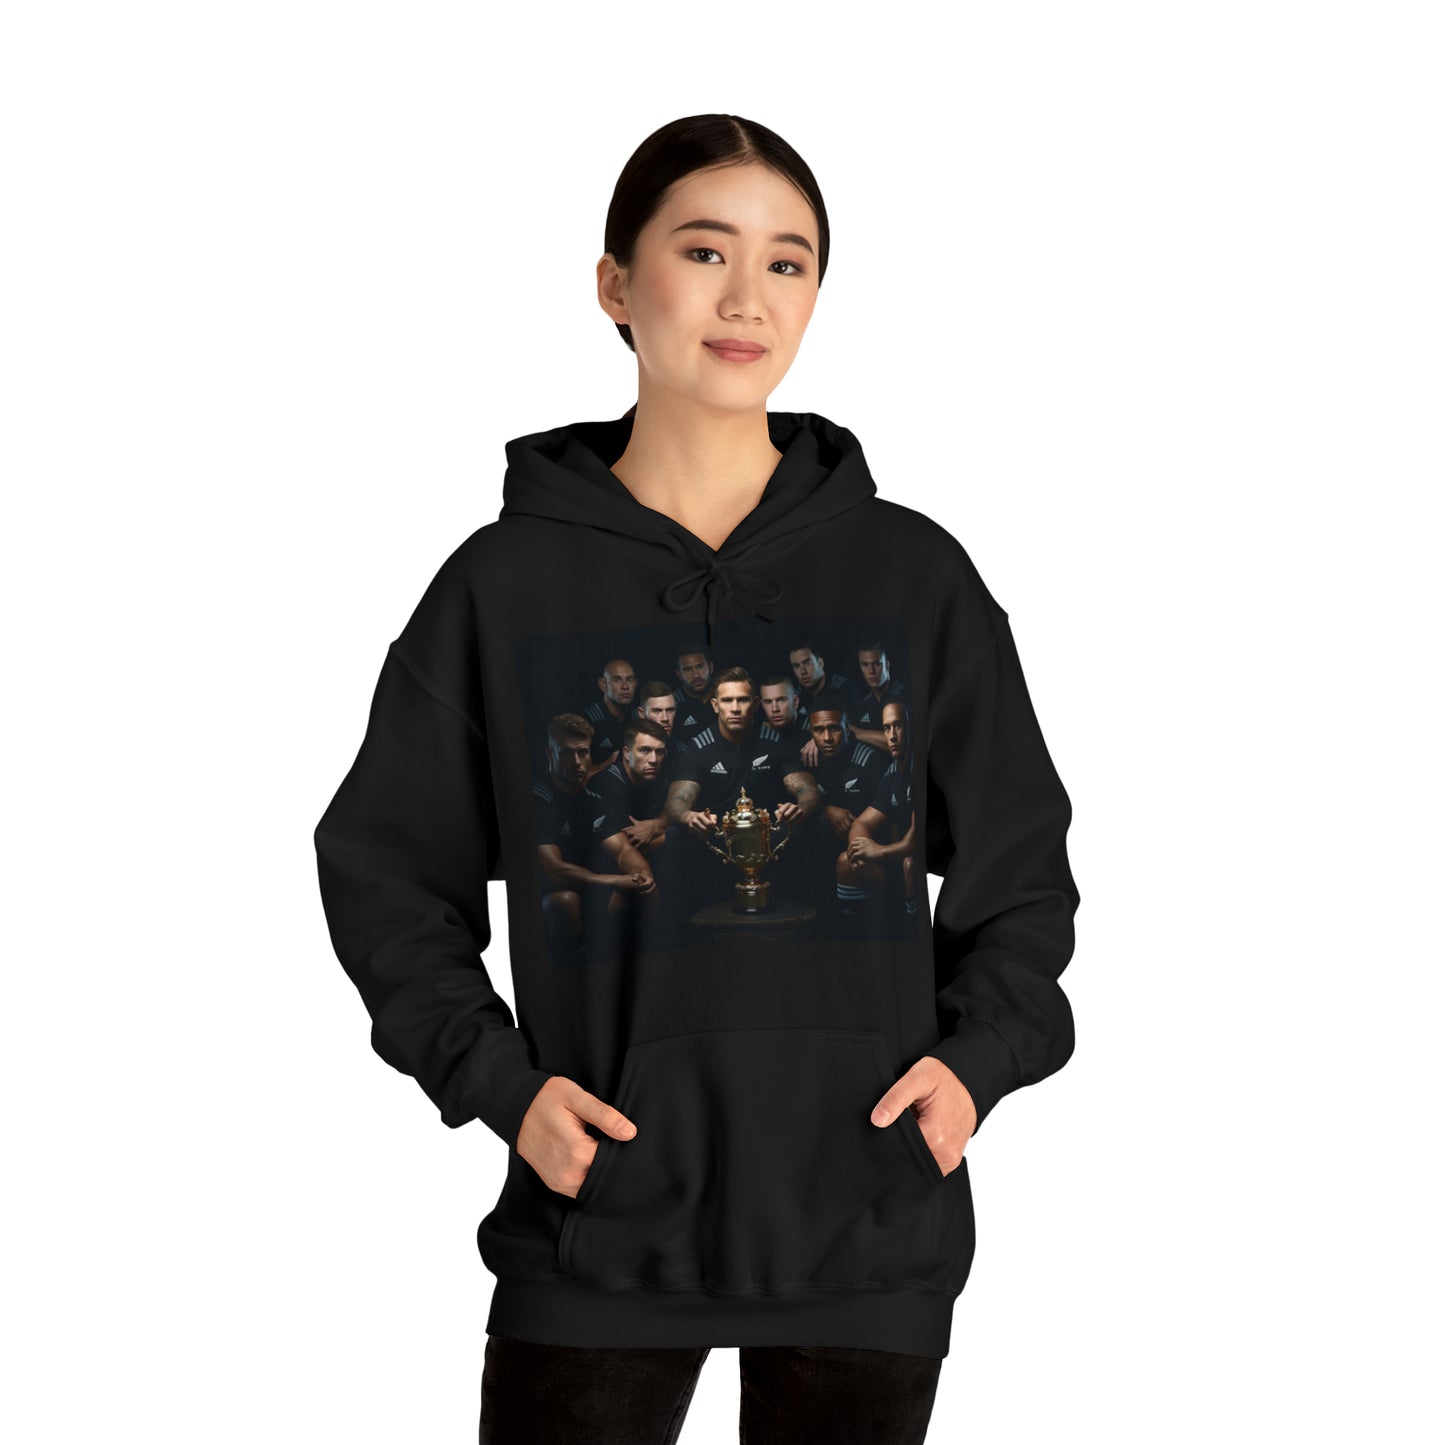 All Blacks Winners Photoshoot - black hoodie